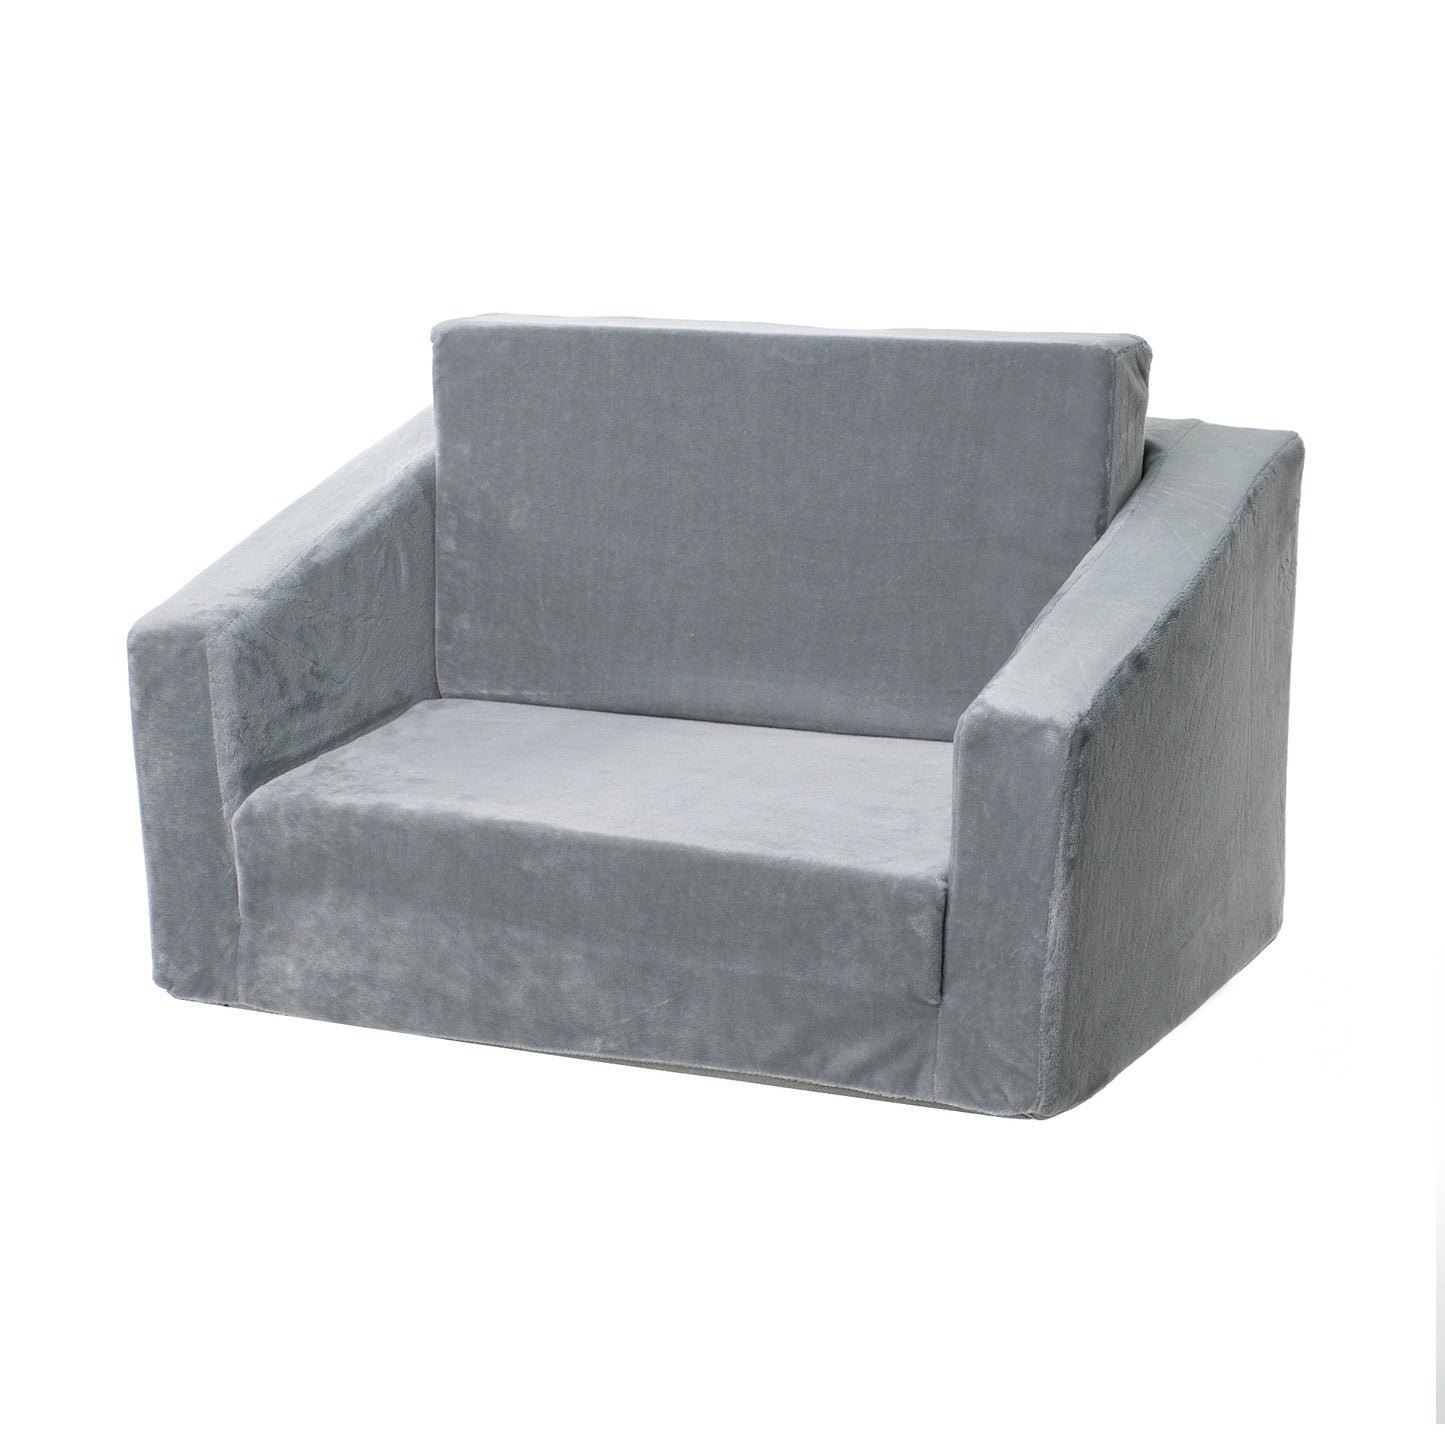 Children's double extendable, soft foam sofa BONO - 2 in 1